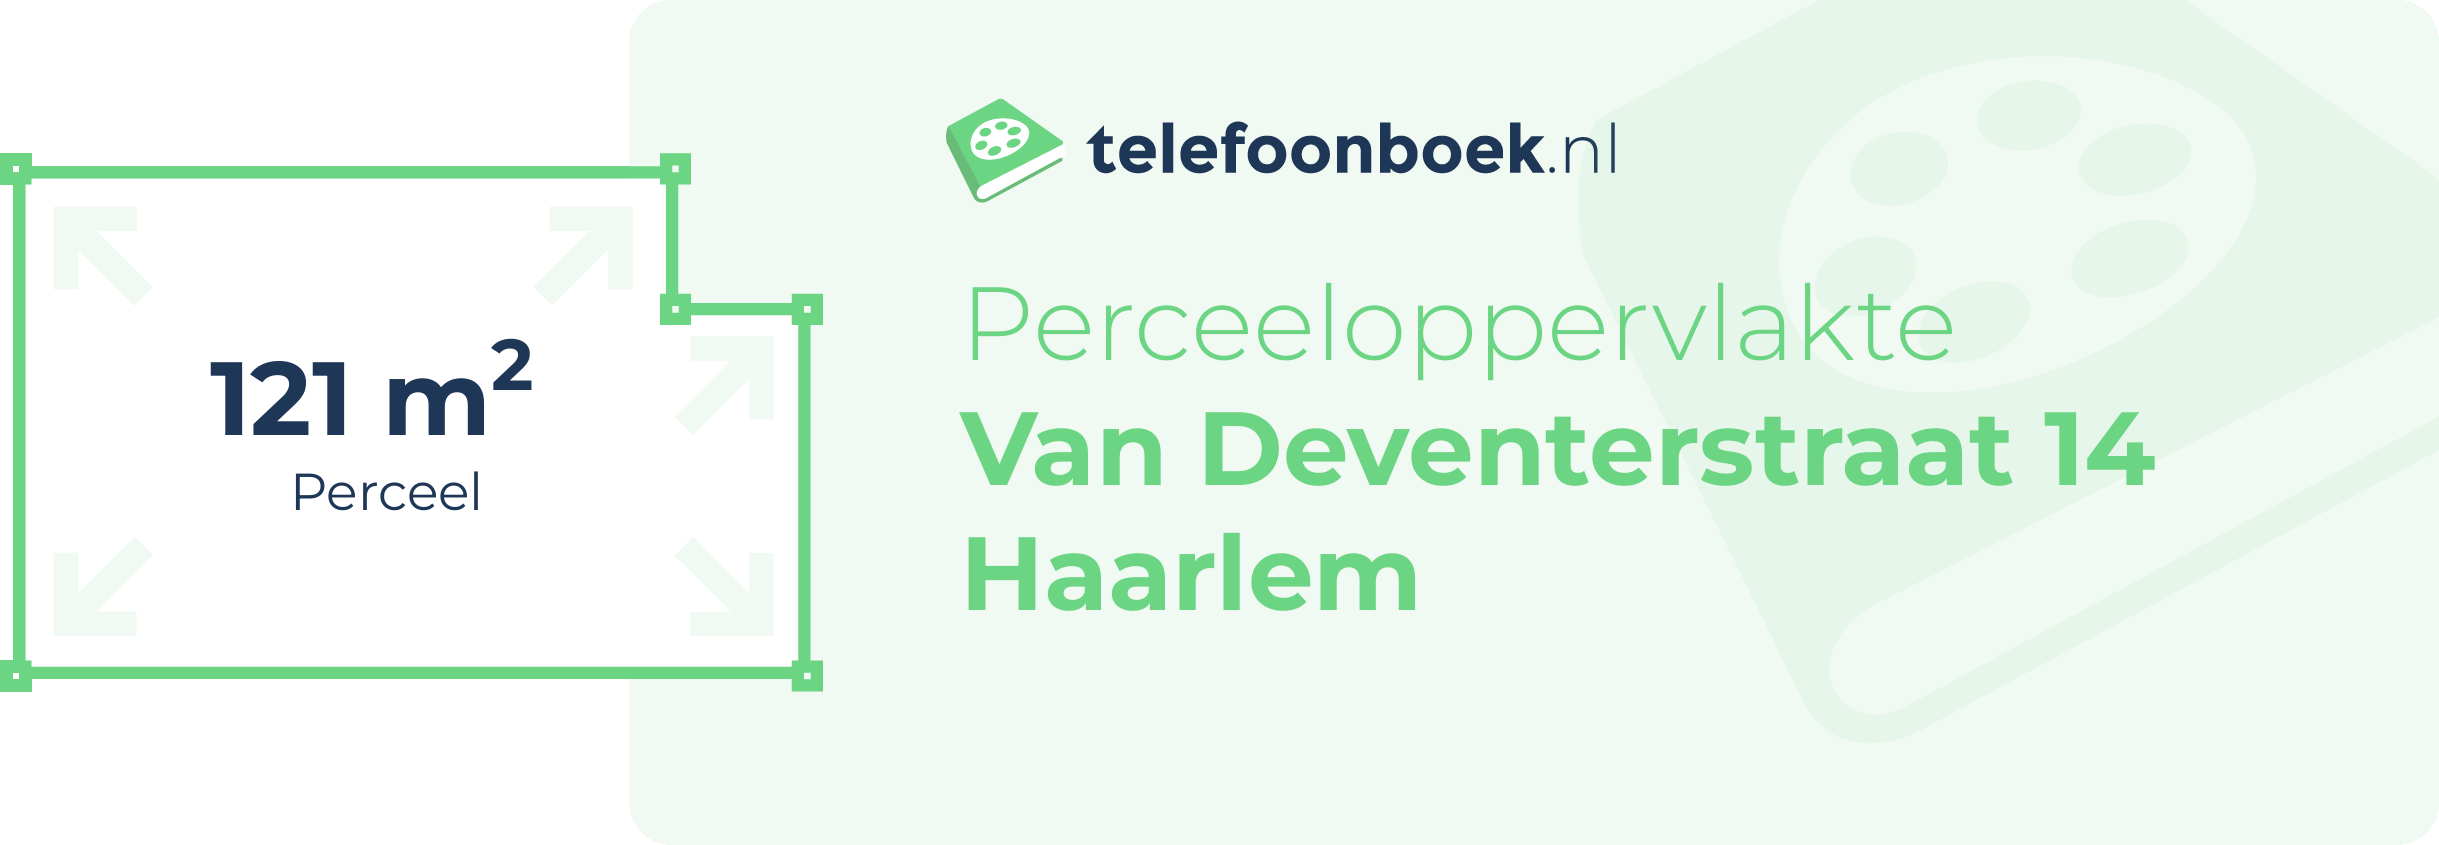 Perceeloppervlakte Van Deventerstraat 14 Haarlem